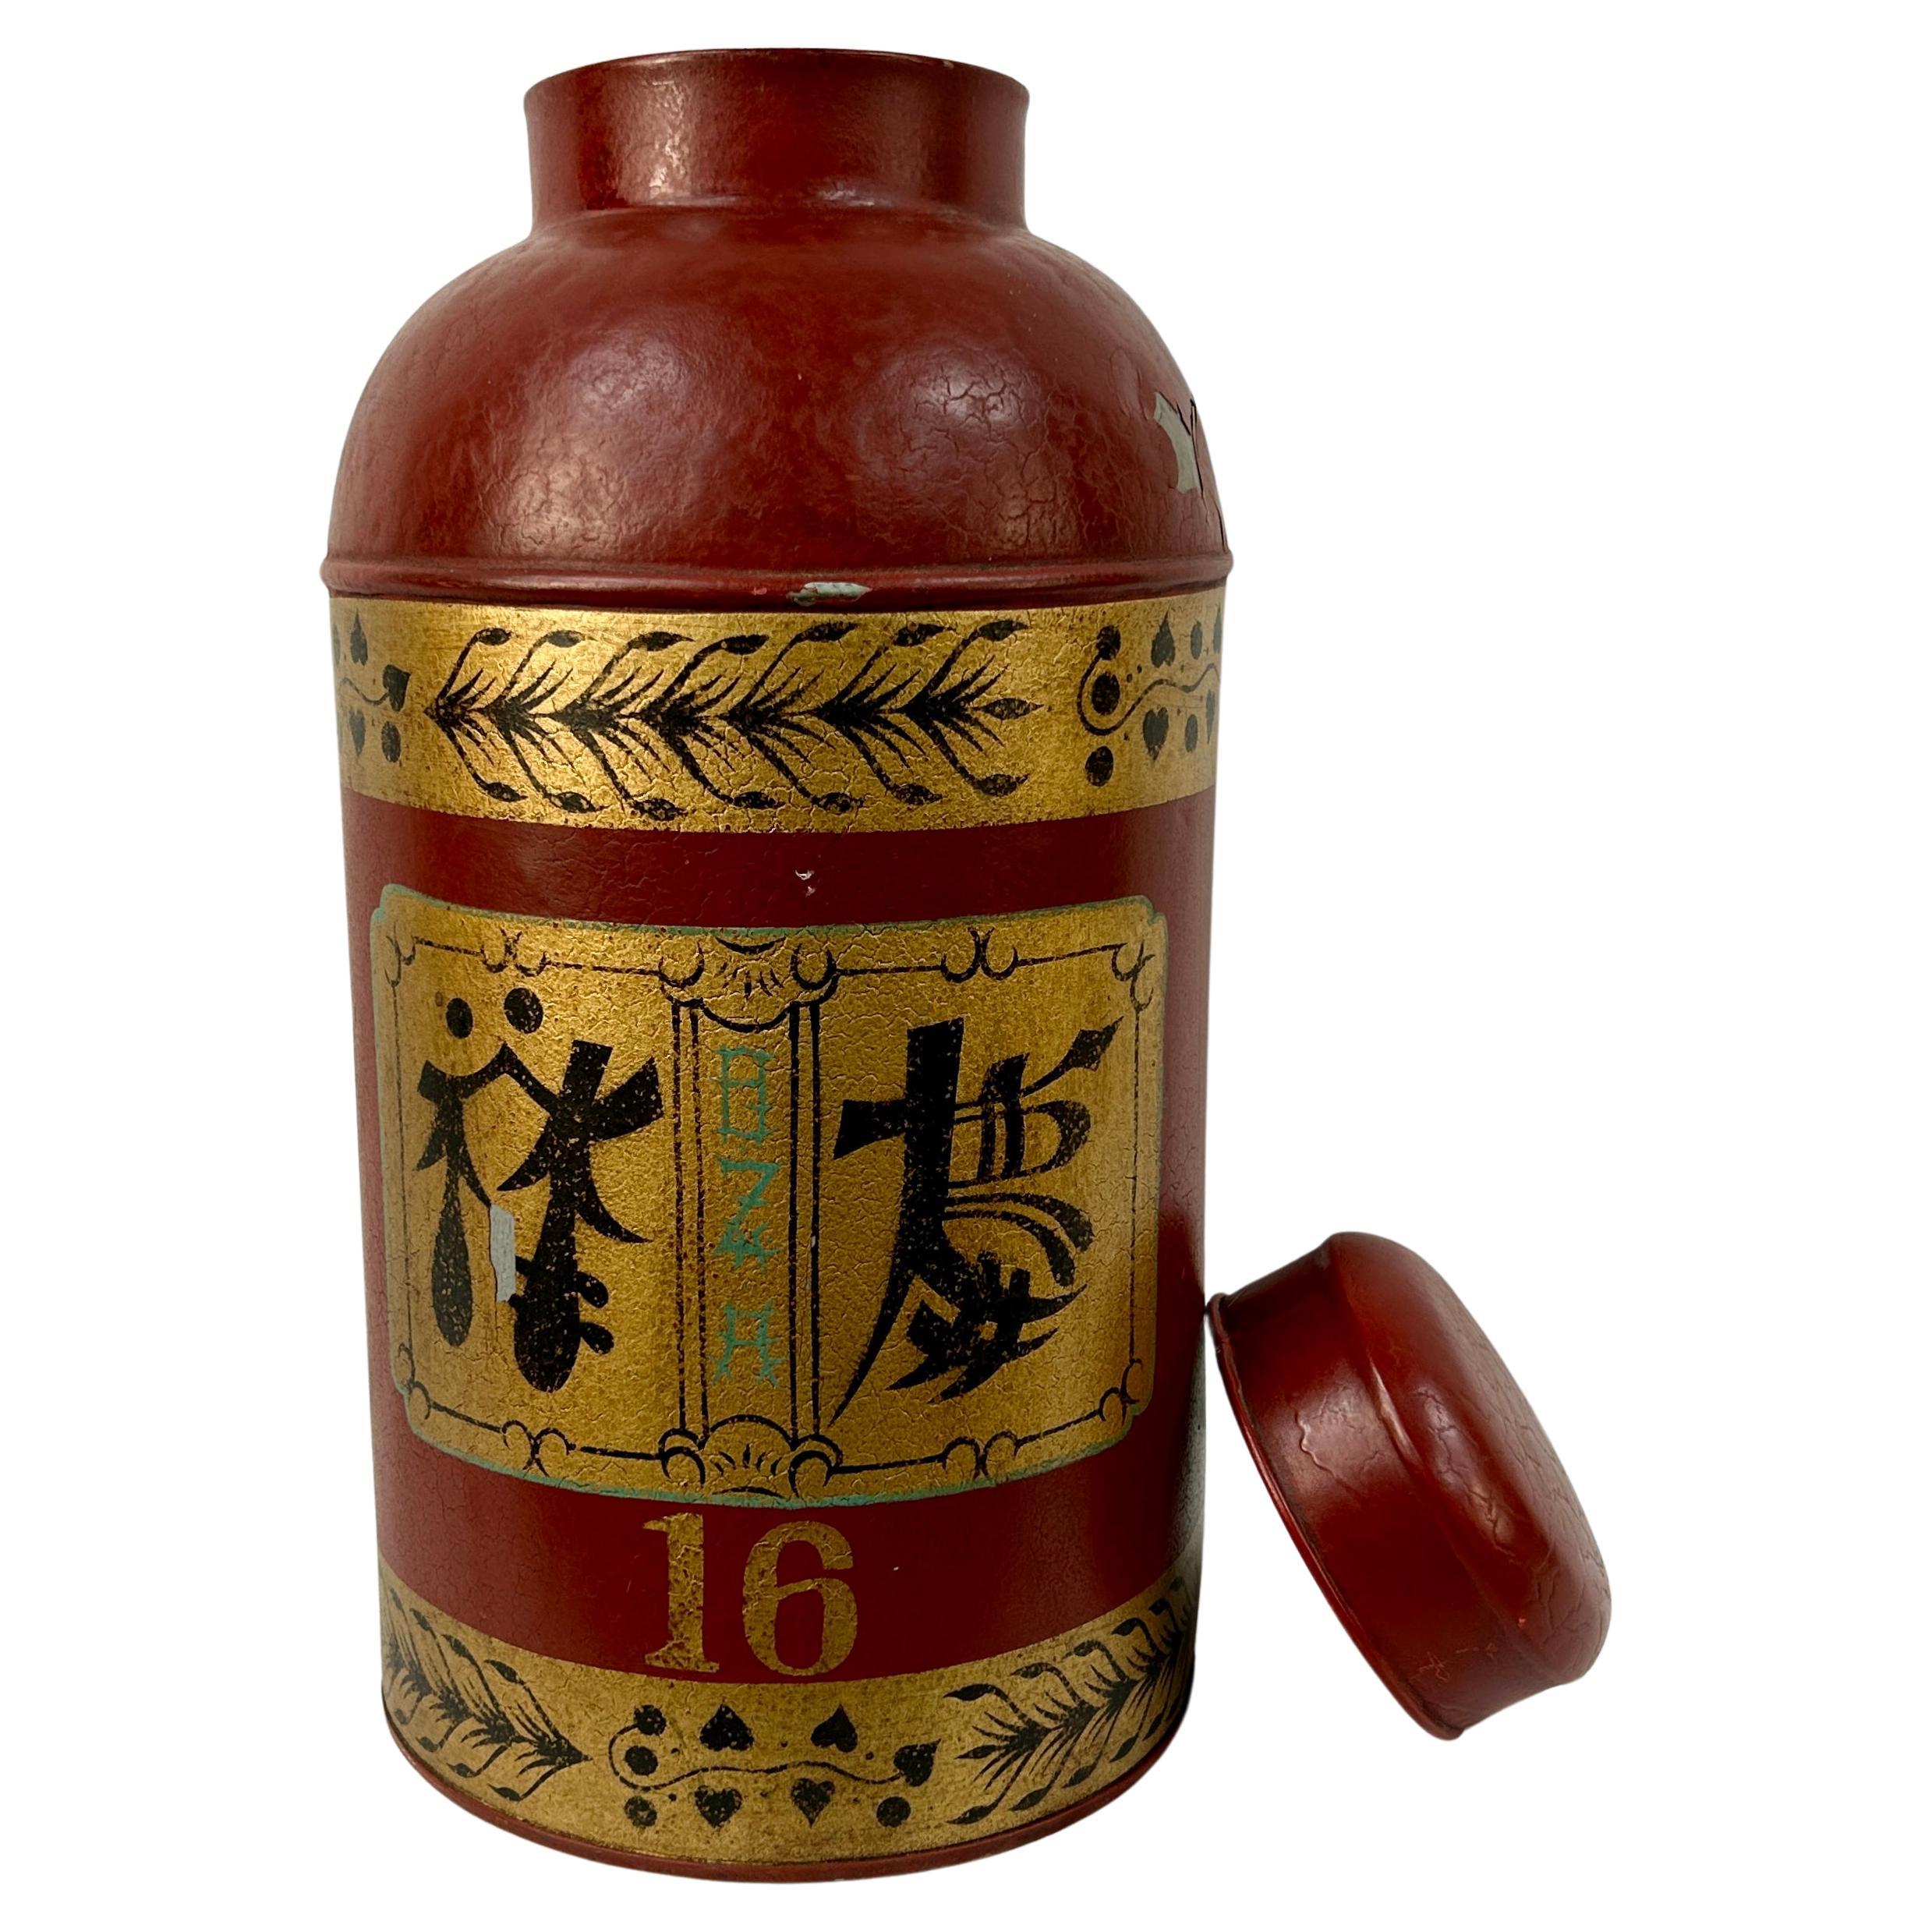 Chinesische Export-Teekanne aus dem späten 20. Jahrhundert mit Deckel. Diese Teedose zeigt chinesische Schriftzeichen und ist handbemalt in Gold, Schwarz und Grün auf rotem Hintergrund. Kann als Dekorationsstück oder als beeindruckende Lampe